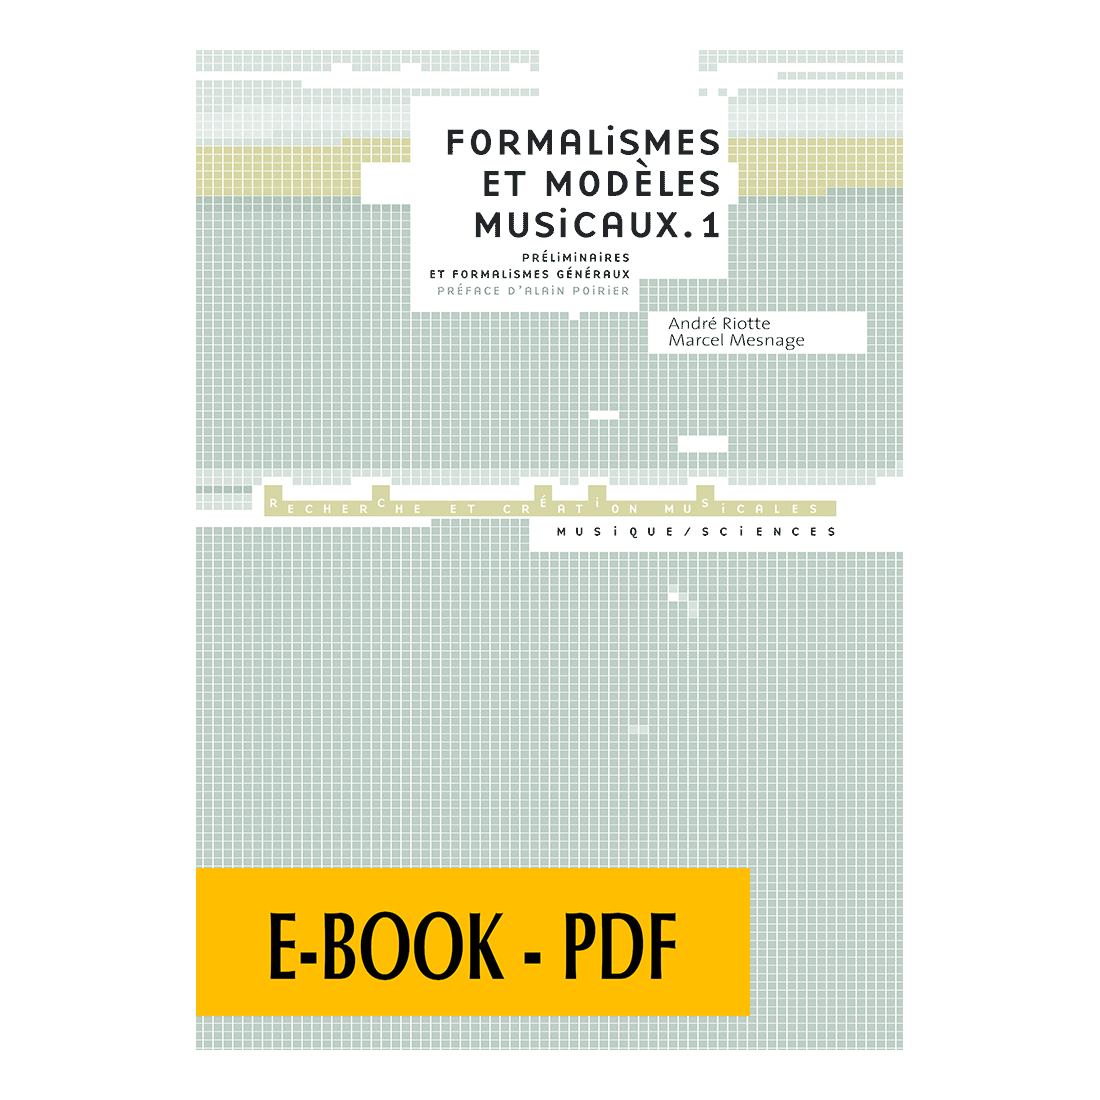 Formalismes et modèles musicaux - Vol. 1 - E-book PDF